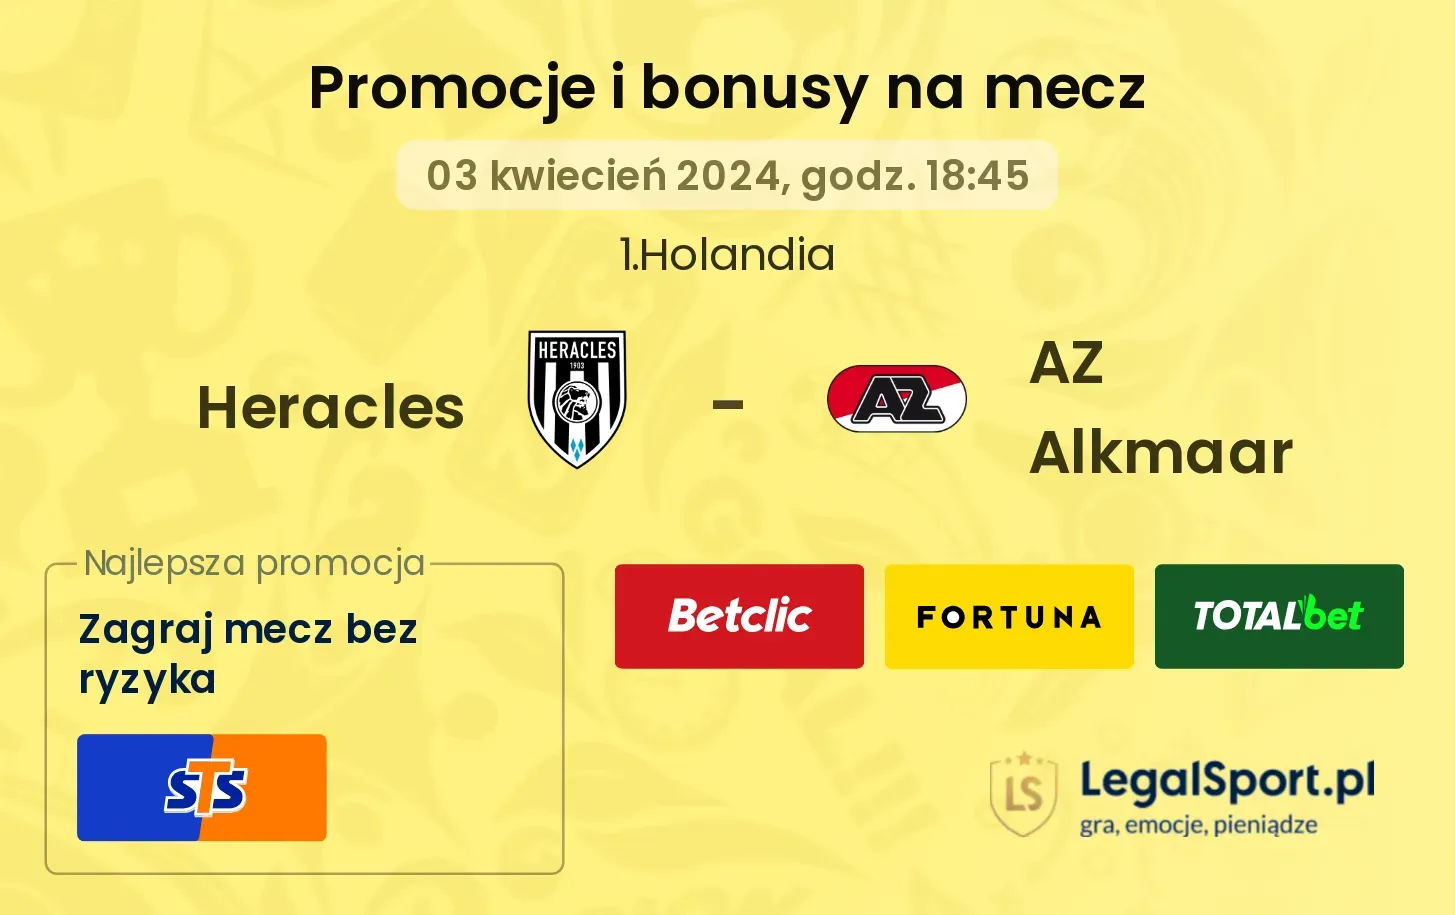 Heracles - AZ Alkmaar promocje bonusy na mecz